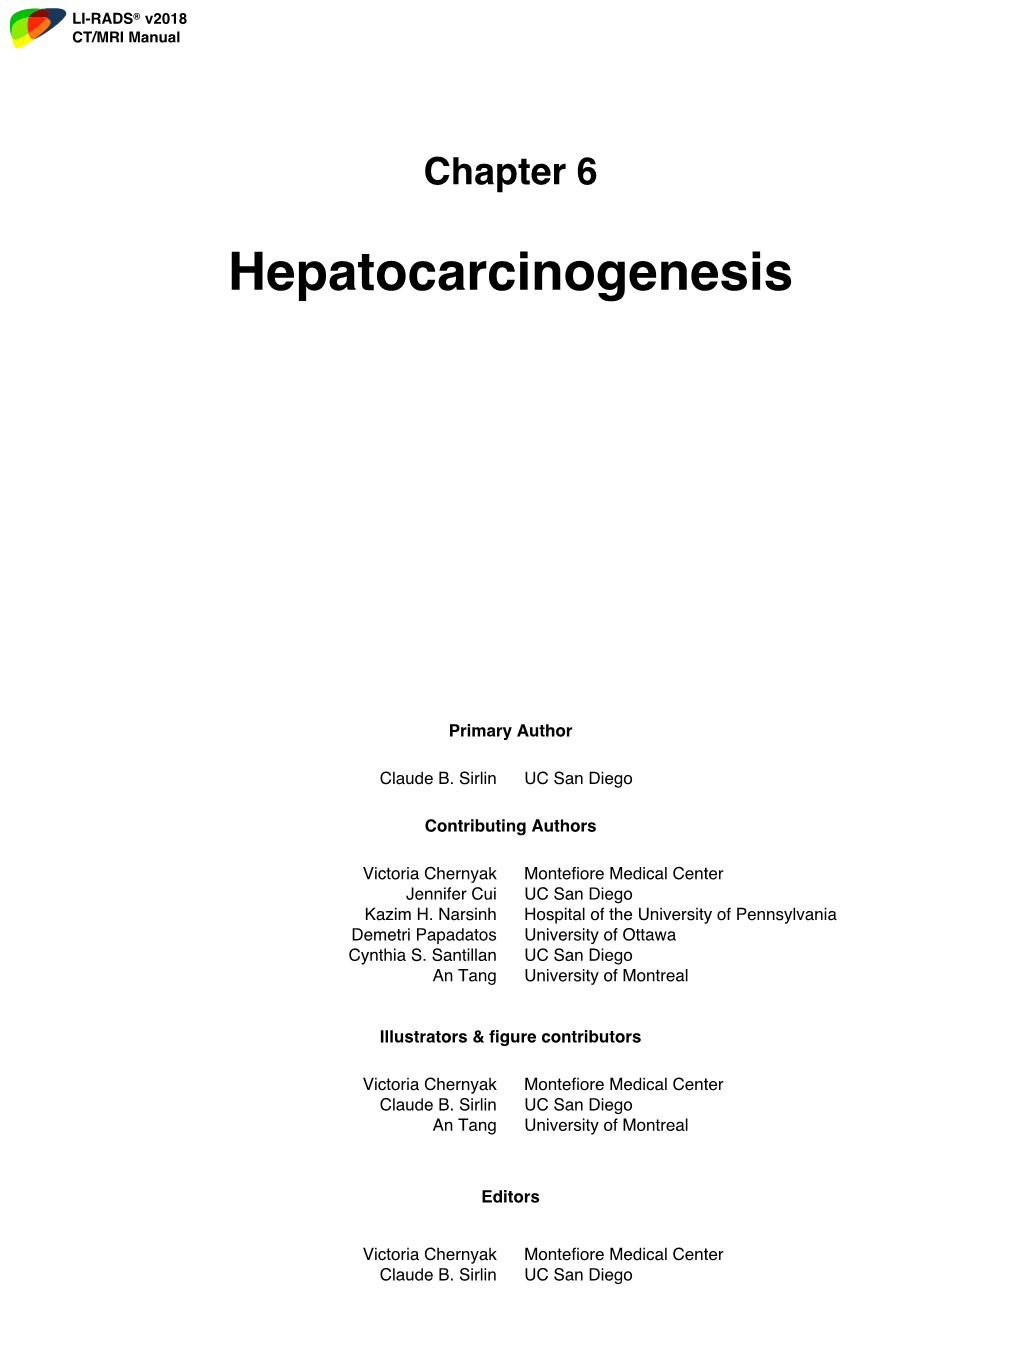 Chapter 6. Hepatocarcinogenesis CS 2018 FINAL